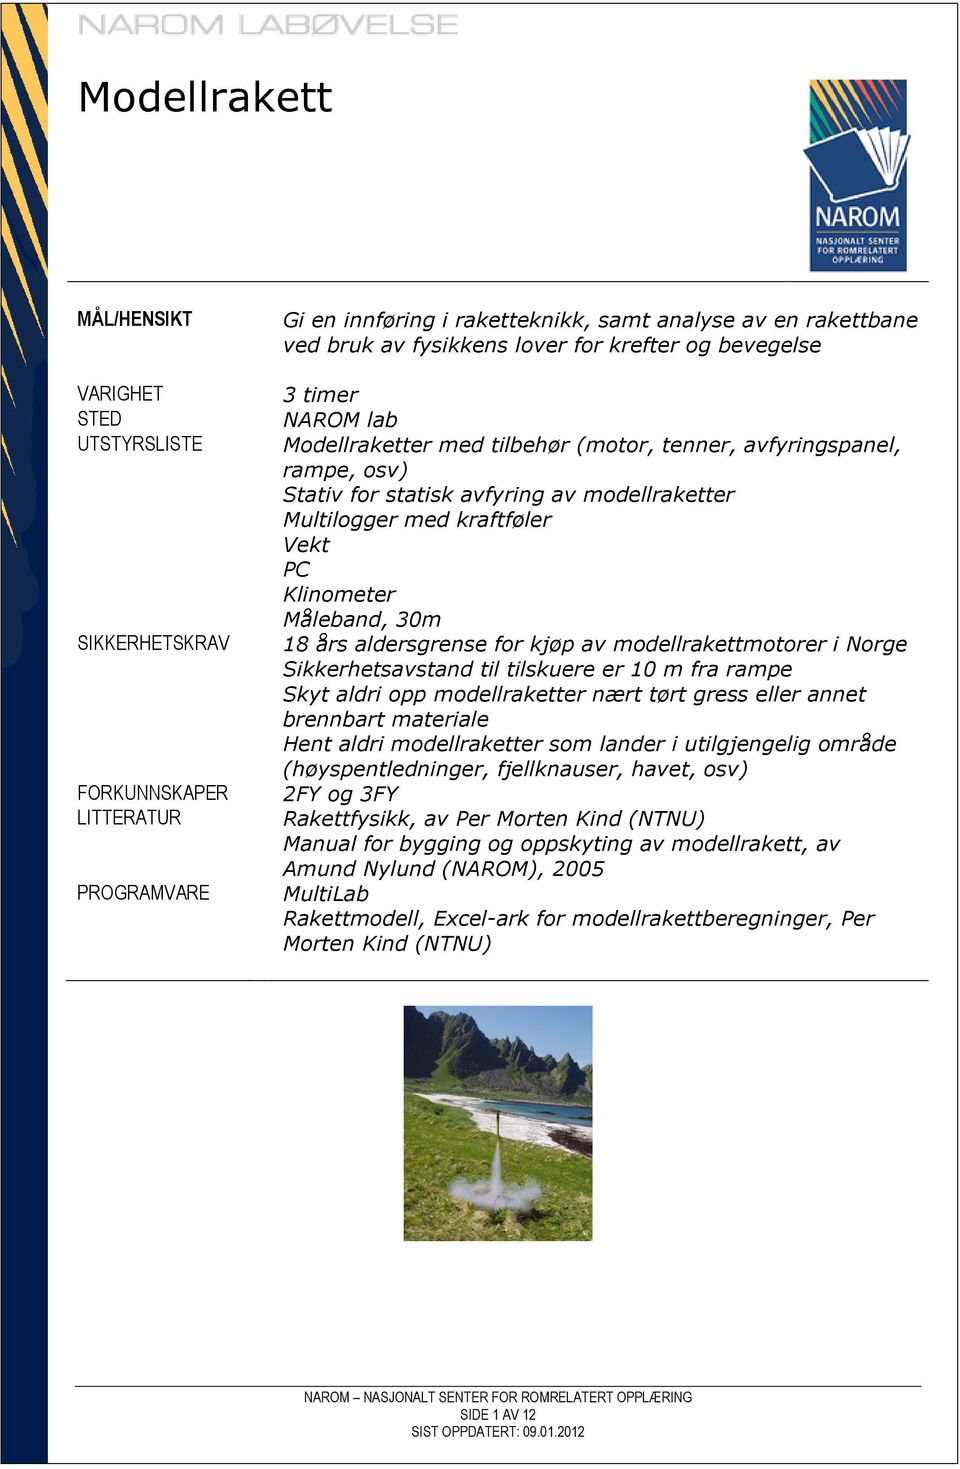 Klinometer Måleband, 30m 18 års aldersgrense for kjøp av modellrakettmotorer i Norge Sikkerhetsavstand til tilskuere er 10 m fra rampe Skyt aldri opp modellraketter nært tørt gress eller annet